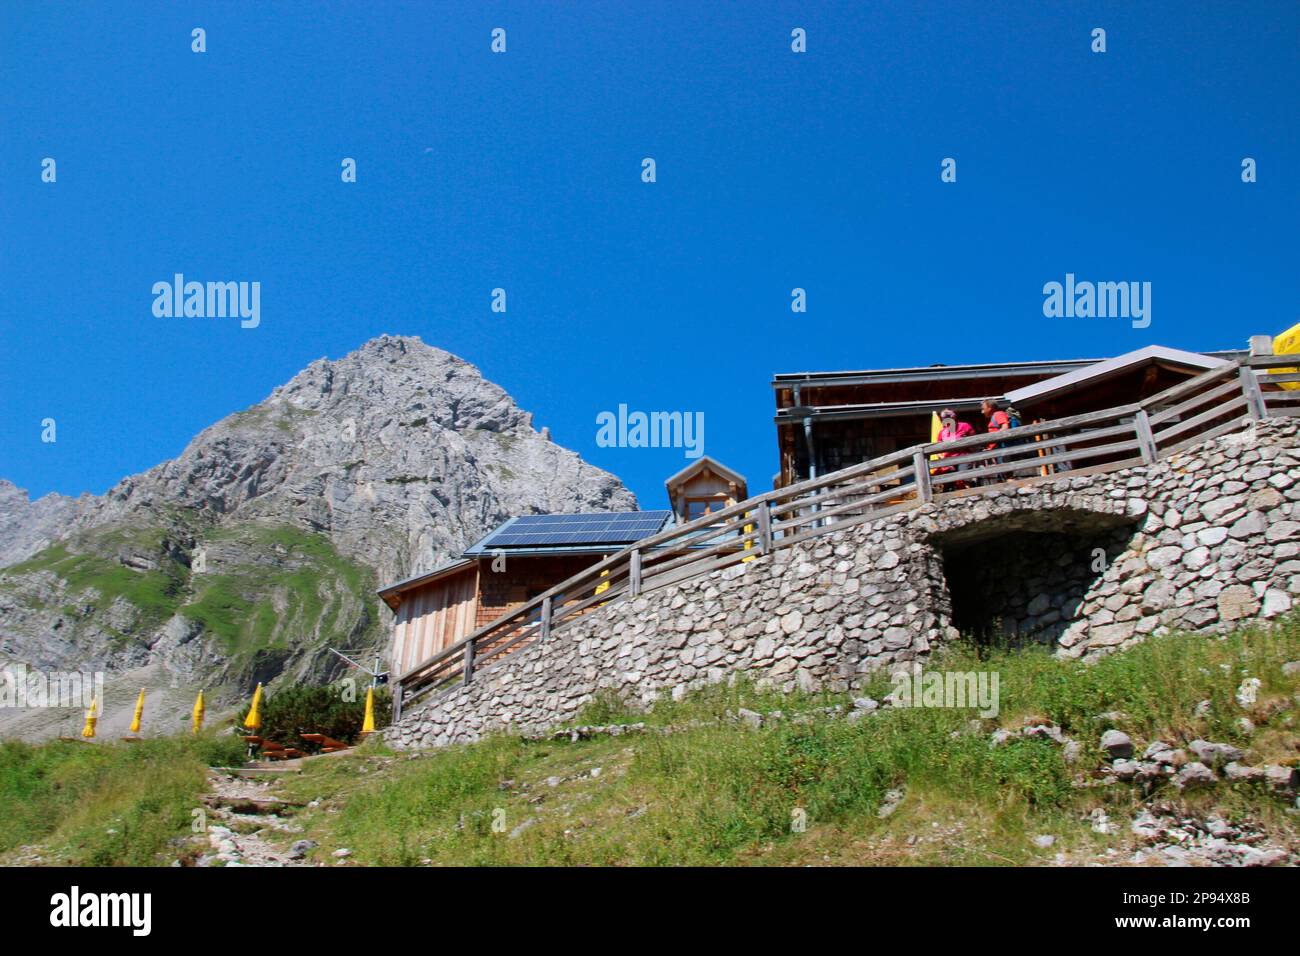 Cabaña Coburger, cabaña DAV, por encima del lago dragón, terraza, cordillera Mieminger, Cabeza de dragón en el fondo, Ehrwald, Tirol, Austria Foto de stock